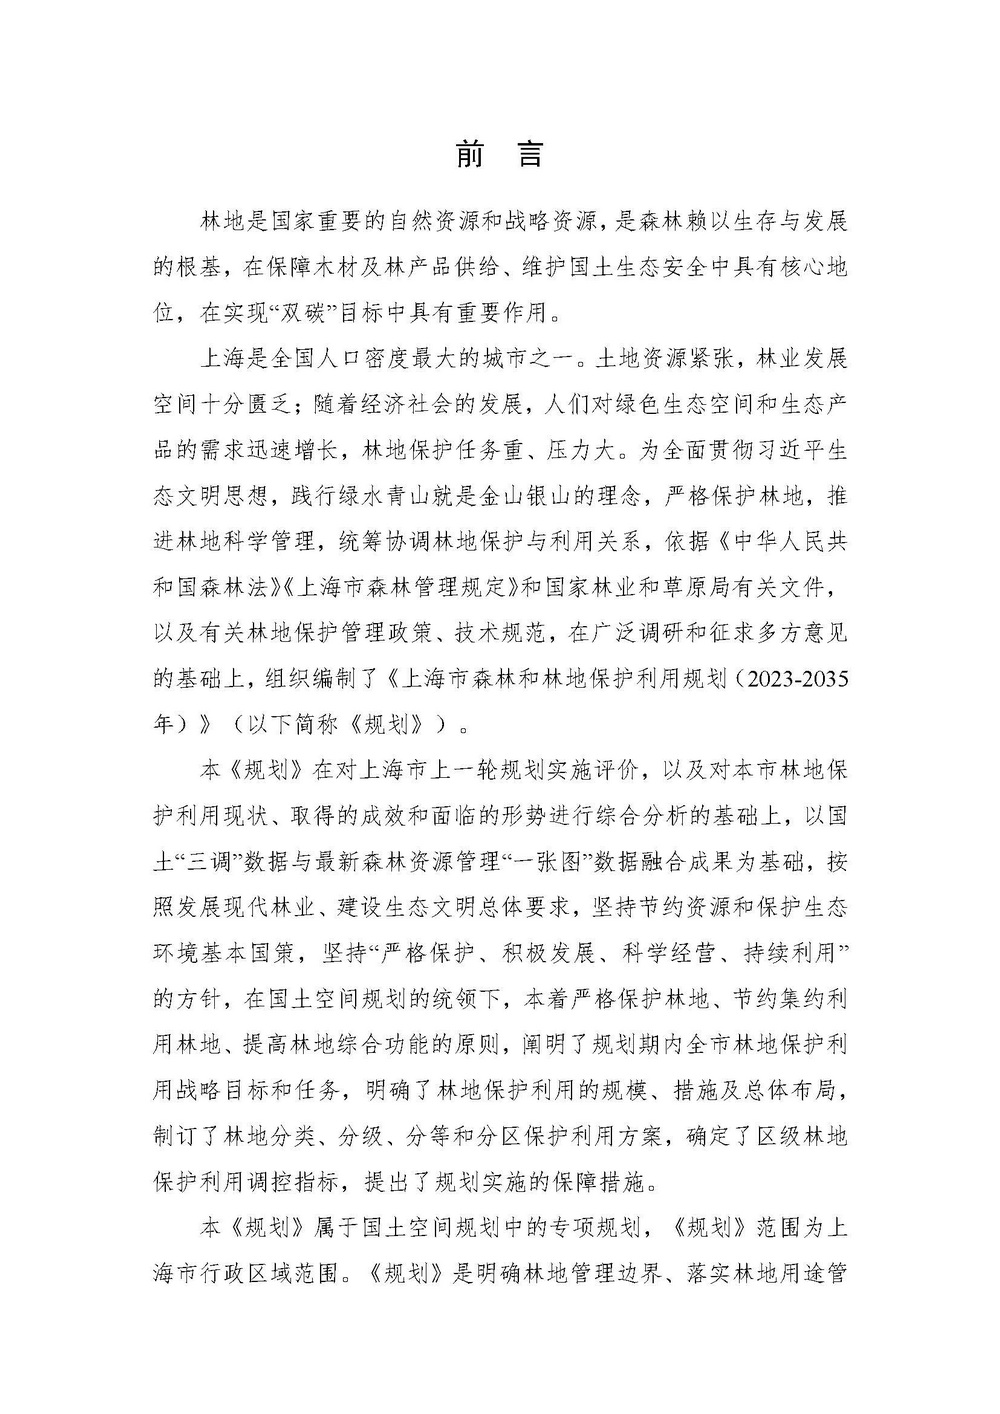 上海市森林和林地保护利用规划文本 公开稿 附图_页面_02.jpg